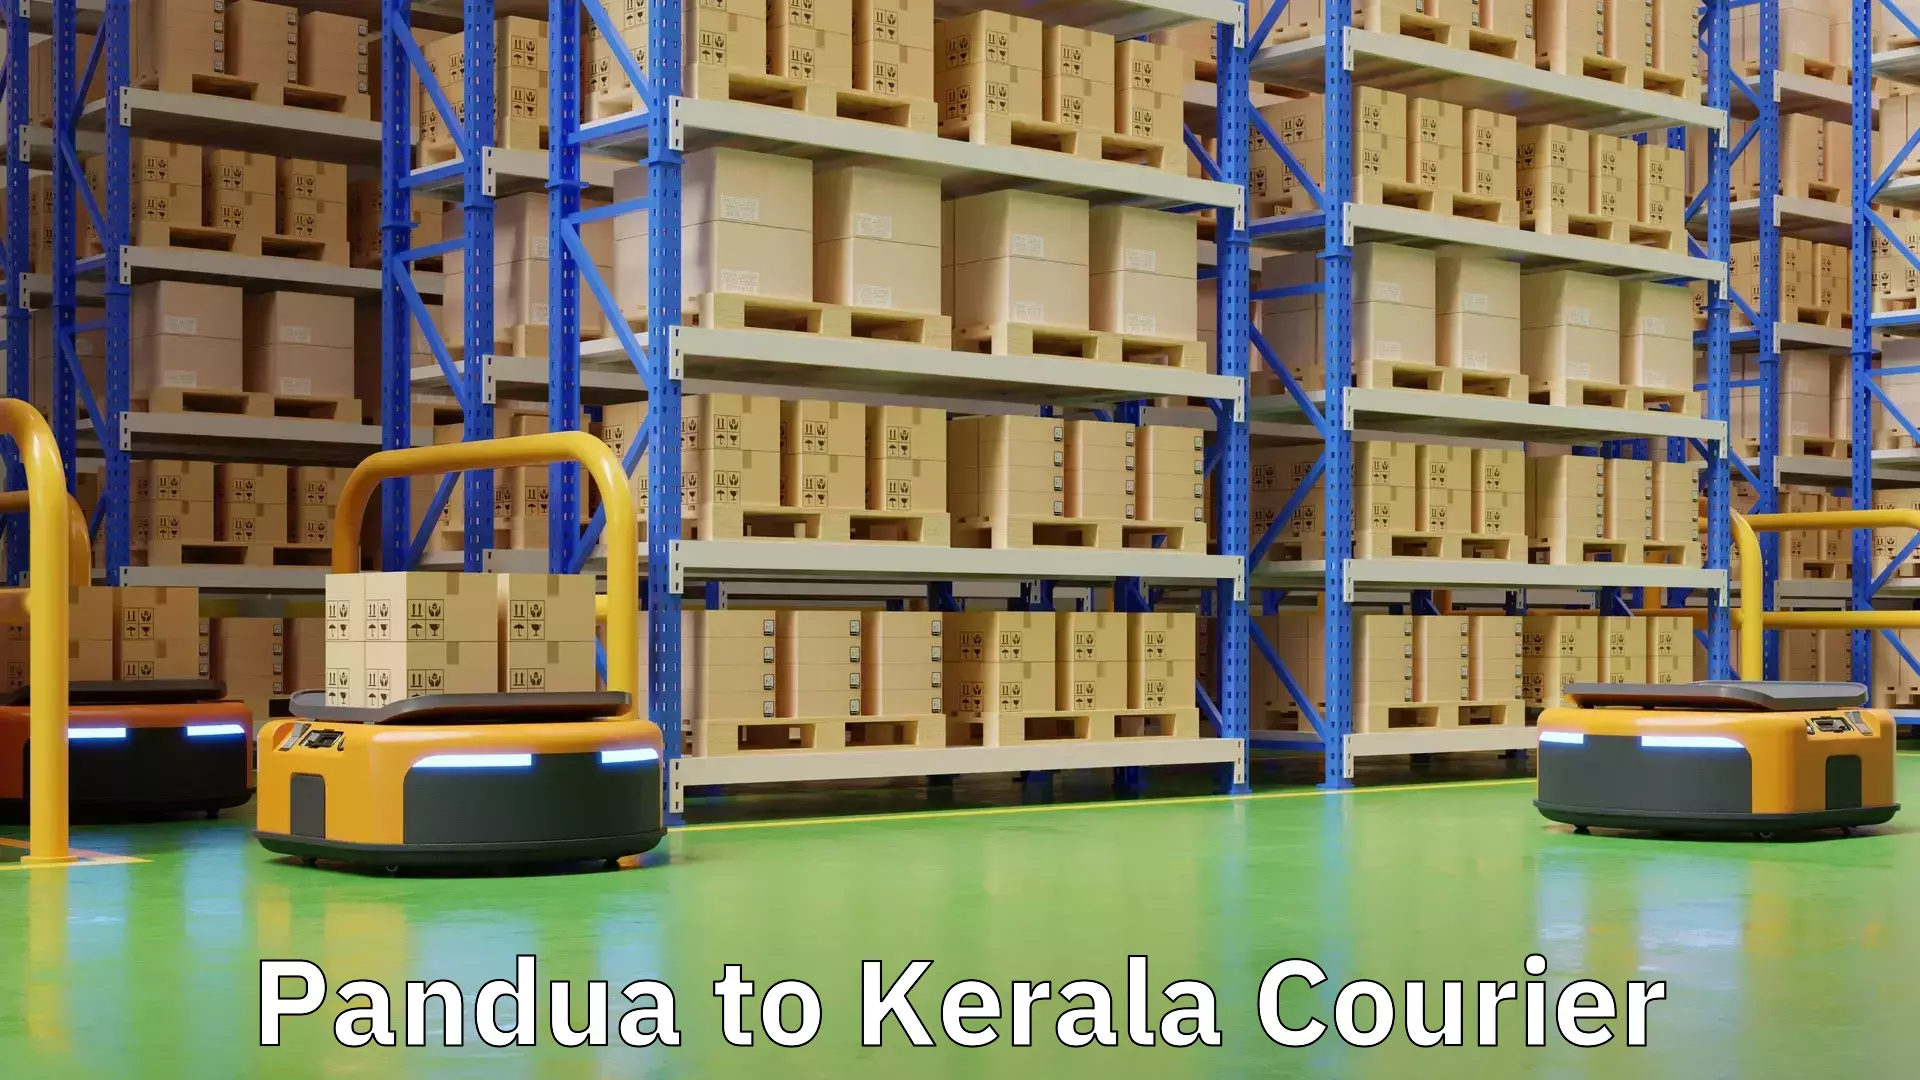 Nationwide courier service Pandua to Kerala